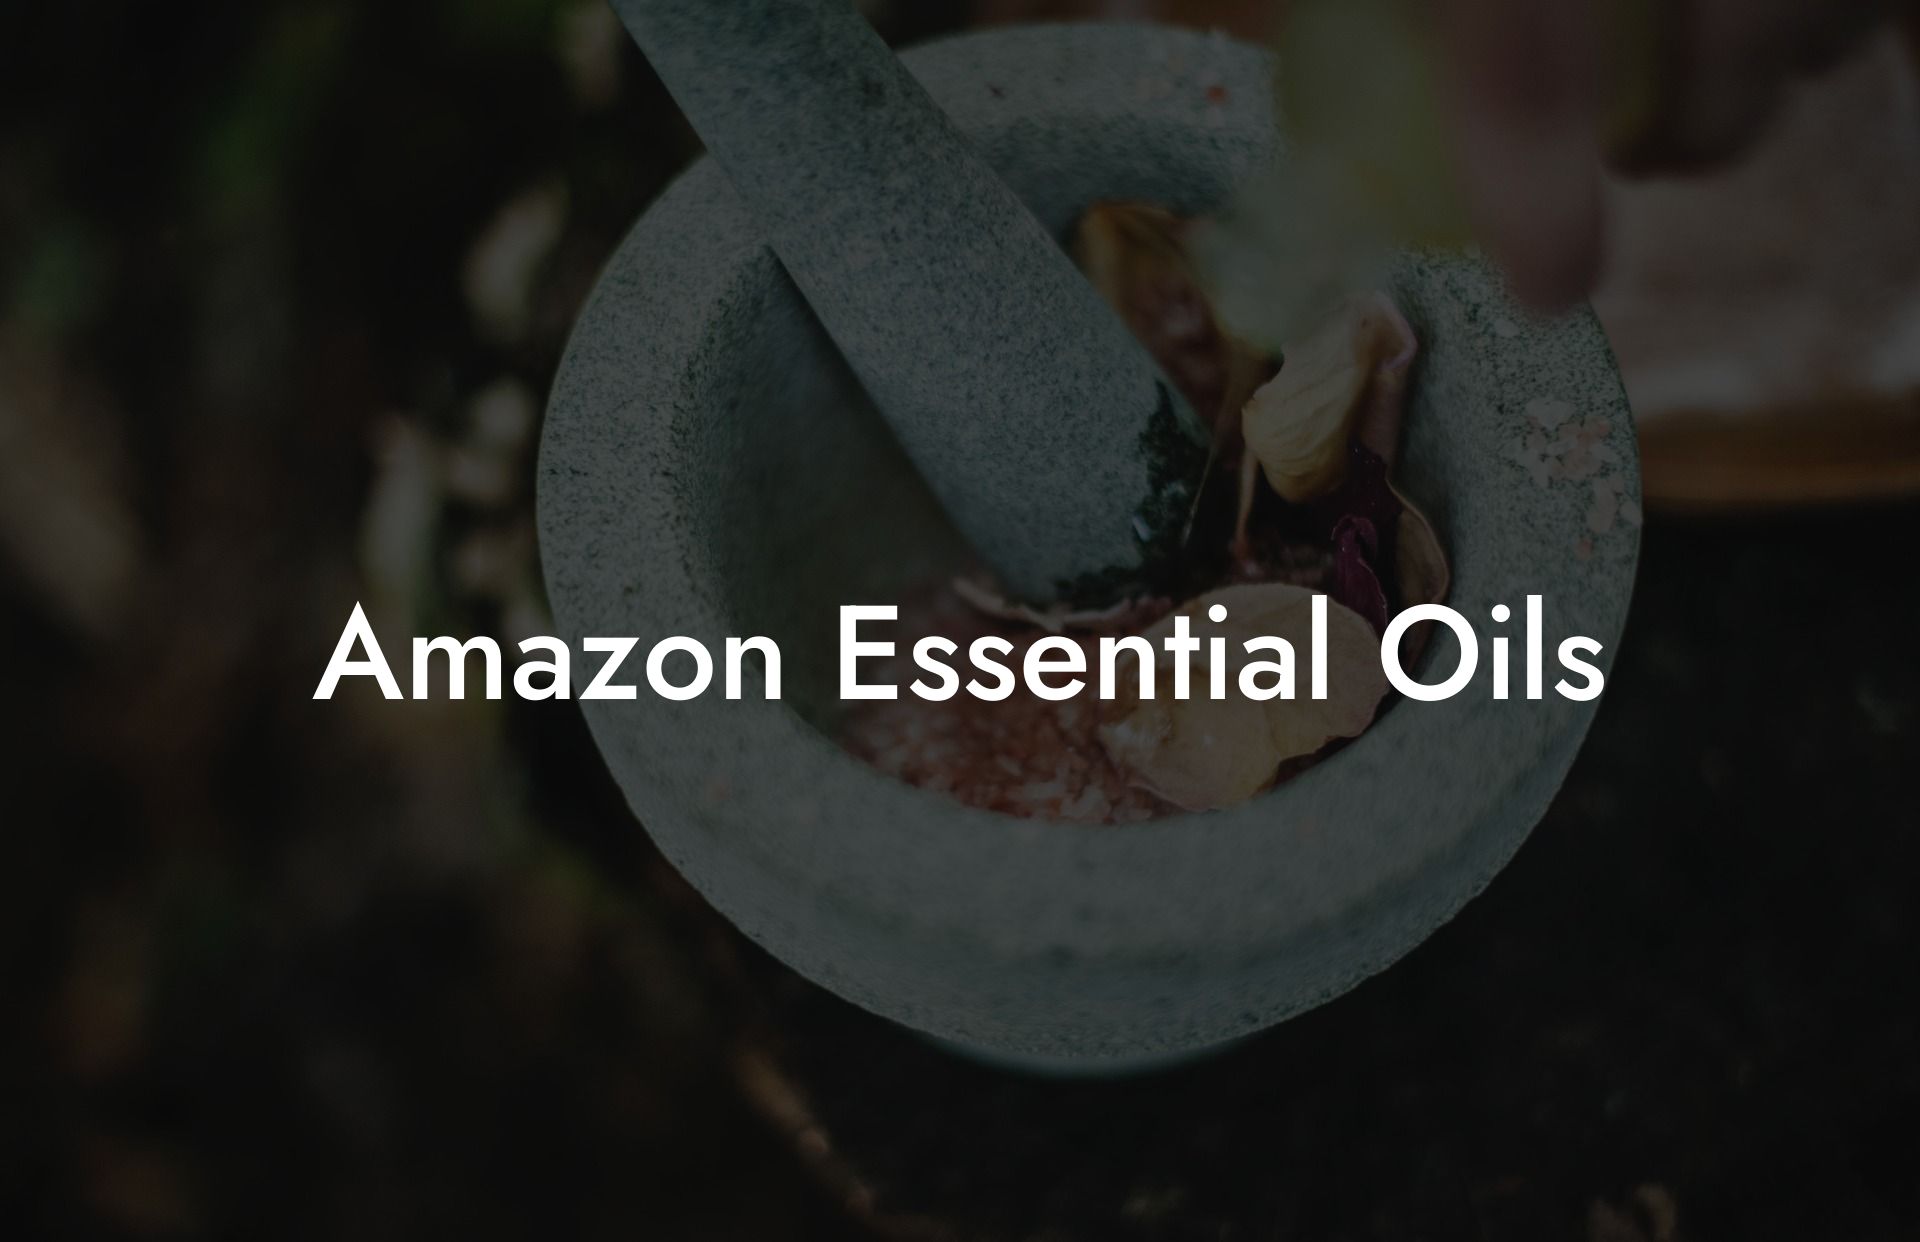 Amazon Essential Oils